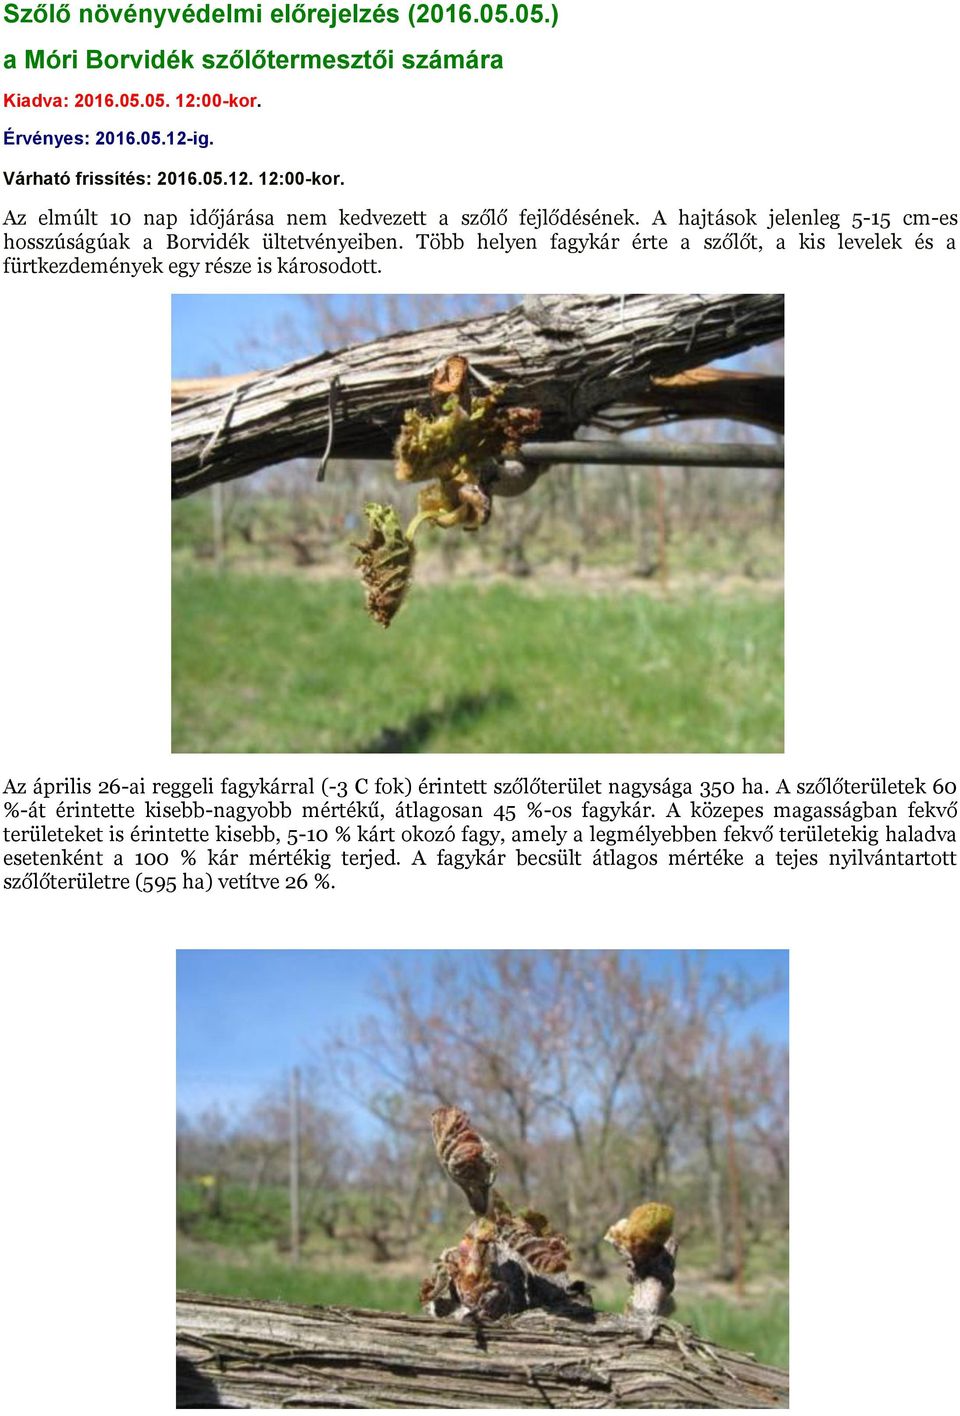 Az április 26-ai reggeli fagykárral (-3 C fok) érintett szőlőterület nagysága 350 ha. A szőlőterületek 60 %-át érintette kisebb-nagyobb mértékű, átlagosan 45 %-os fagykár.